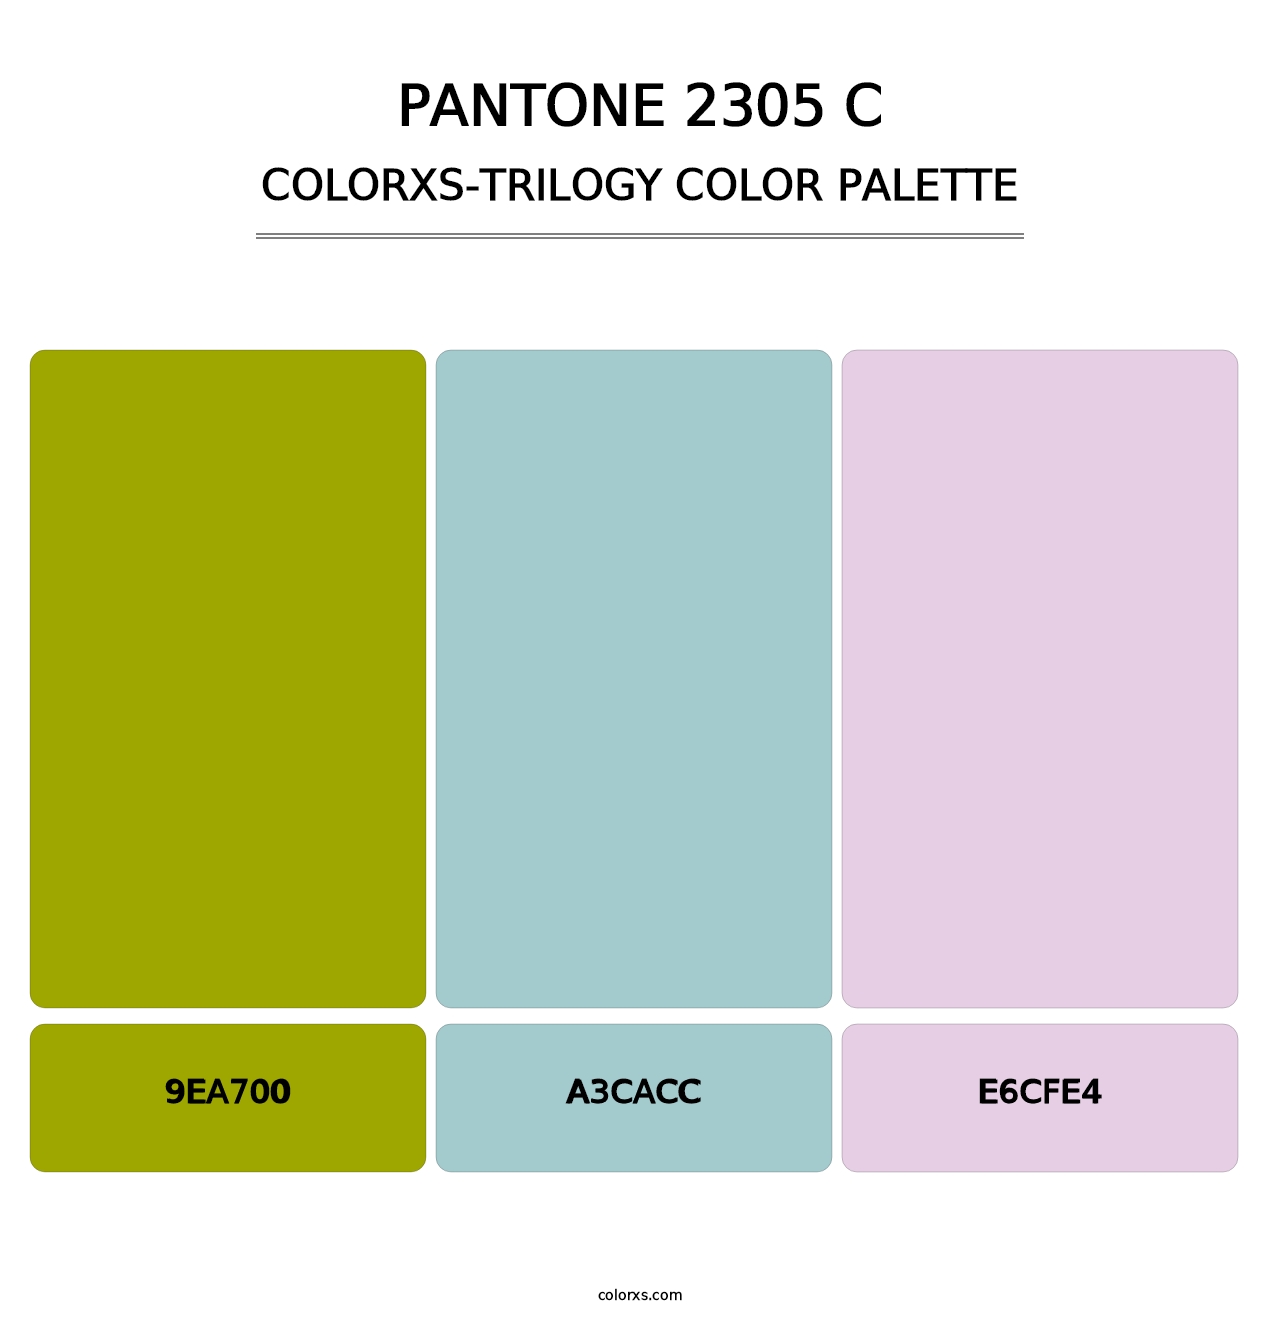 PANTONE 2305 C - Colorxs Trilogy Palette